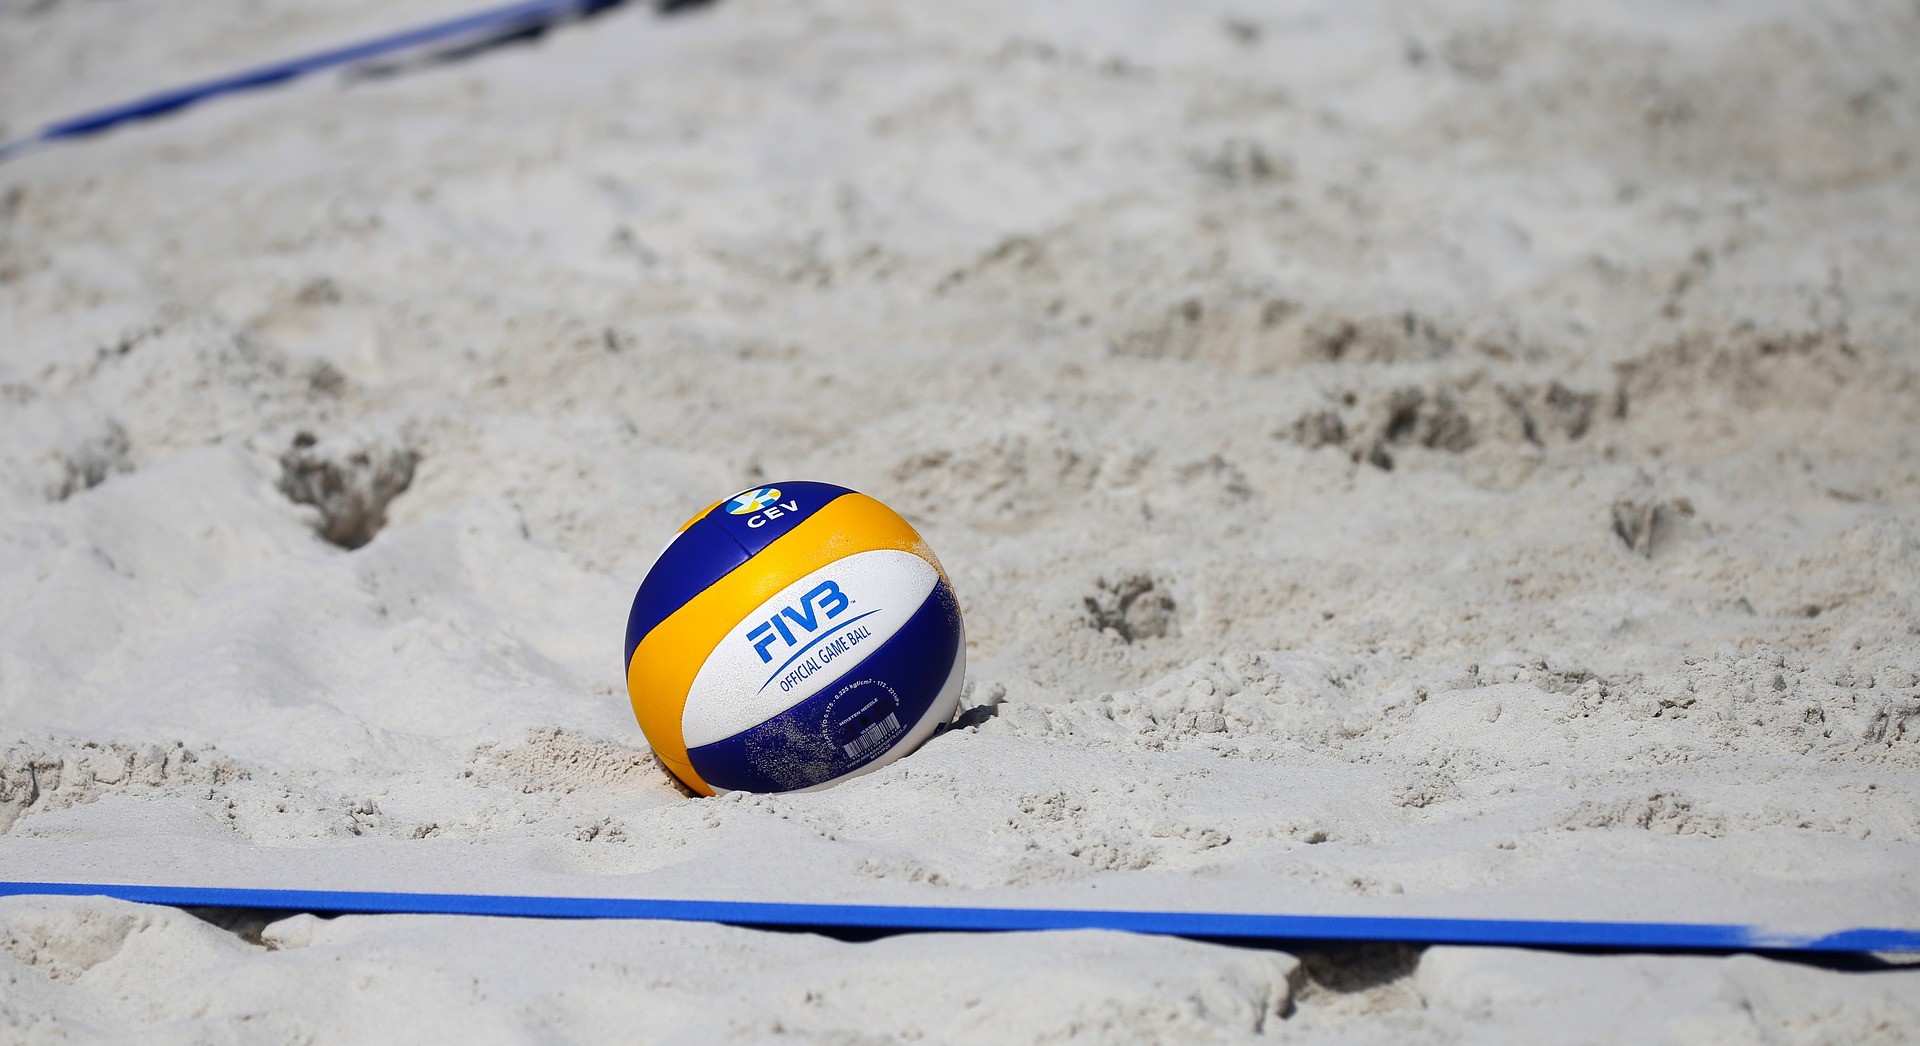 Studentu sporta spēļu semestra ietvaros aicina piedalīties pludmales volejbola turnīrā